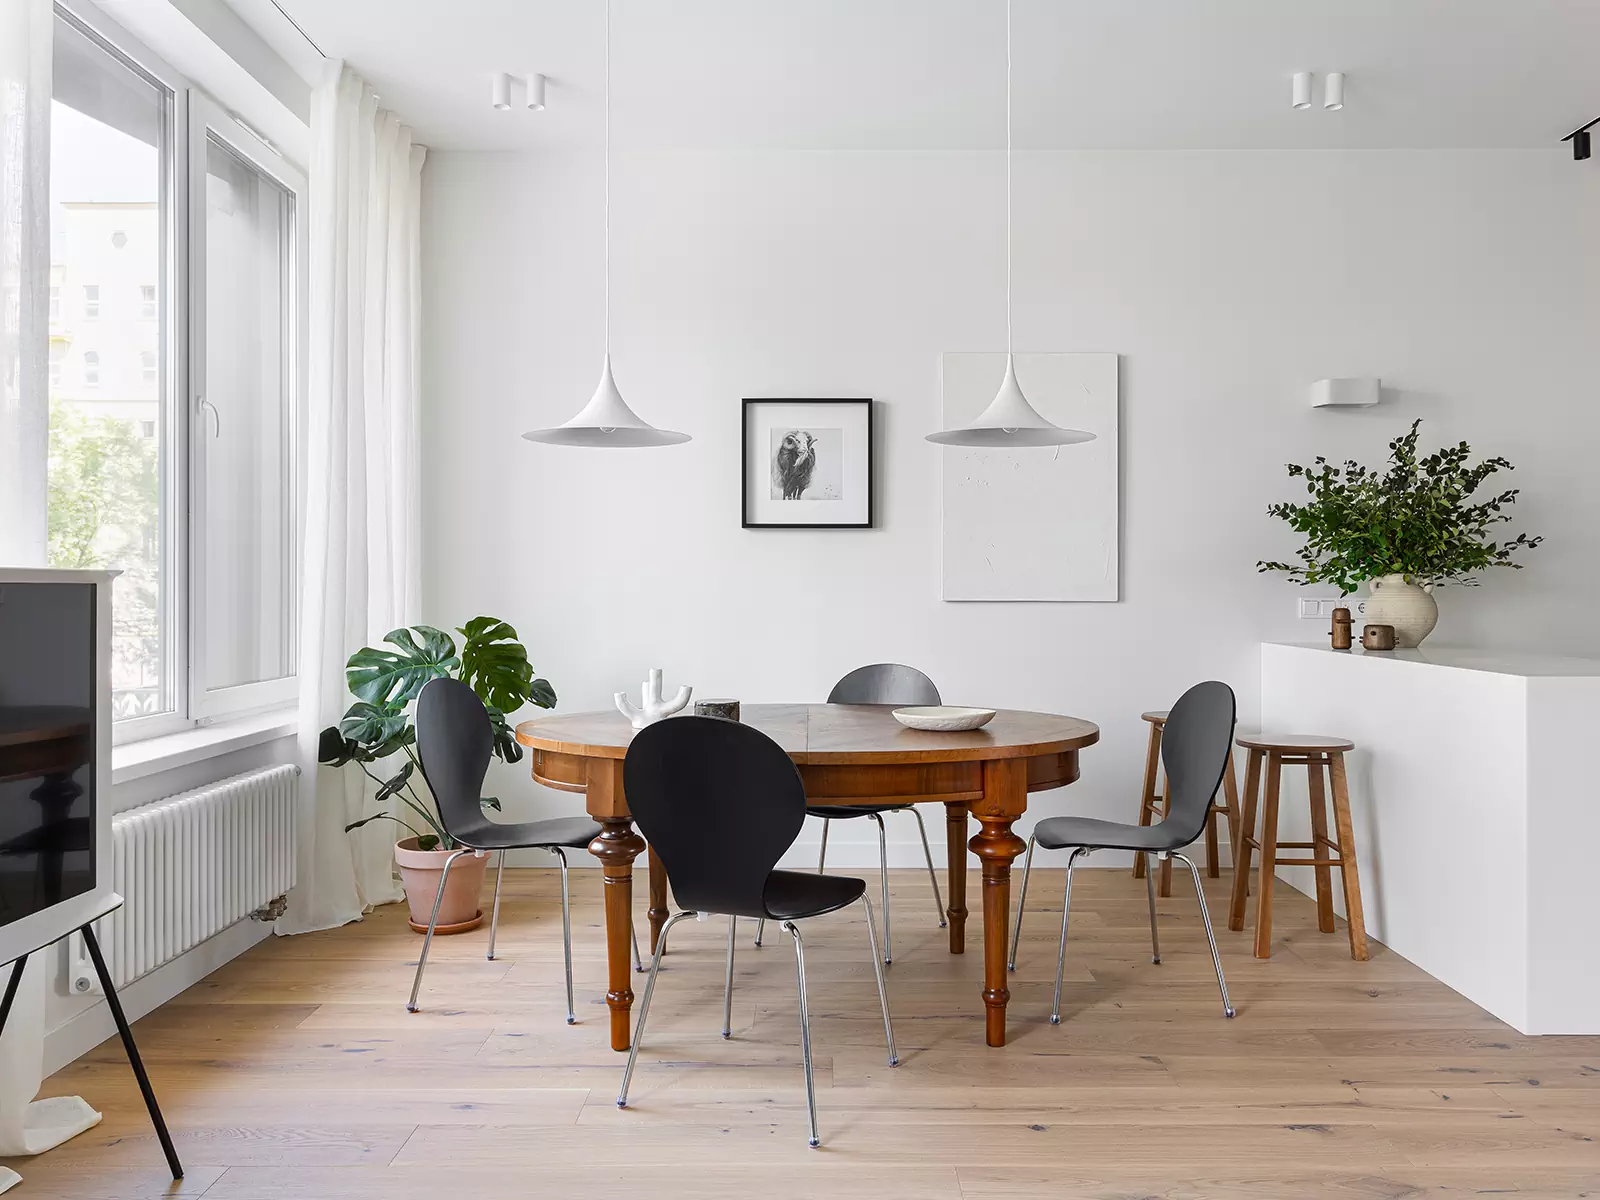 Нотки скандинавского стиля в интерьере квартиры для семьи с двумя детьми — проект студии Style By Sorensen